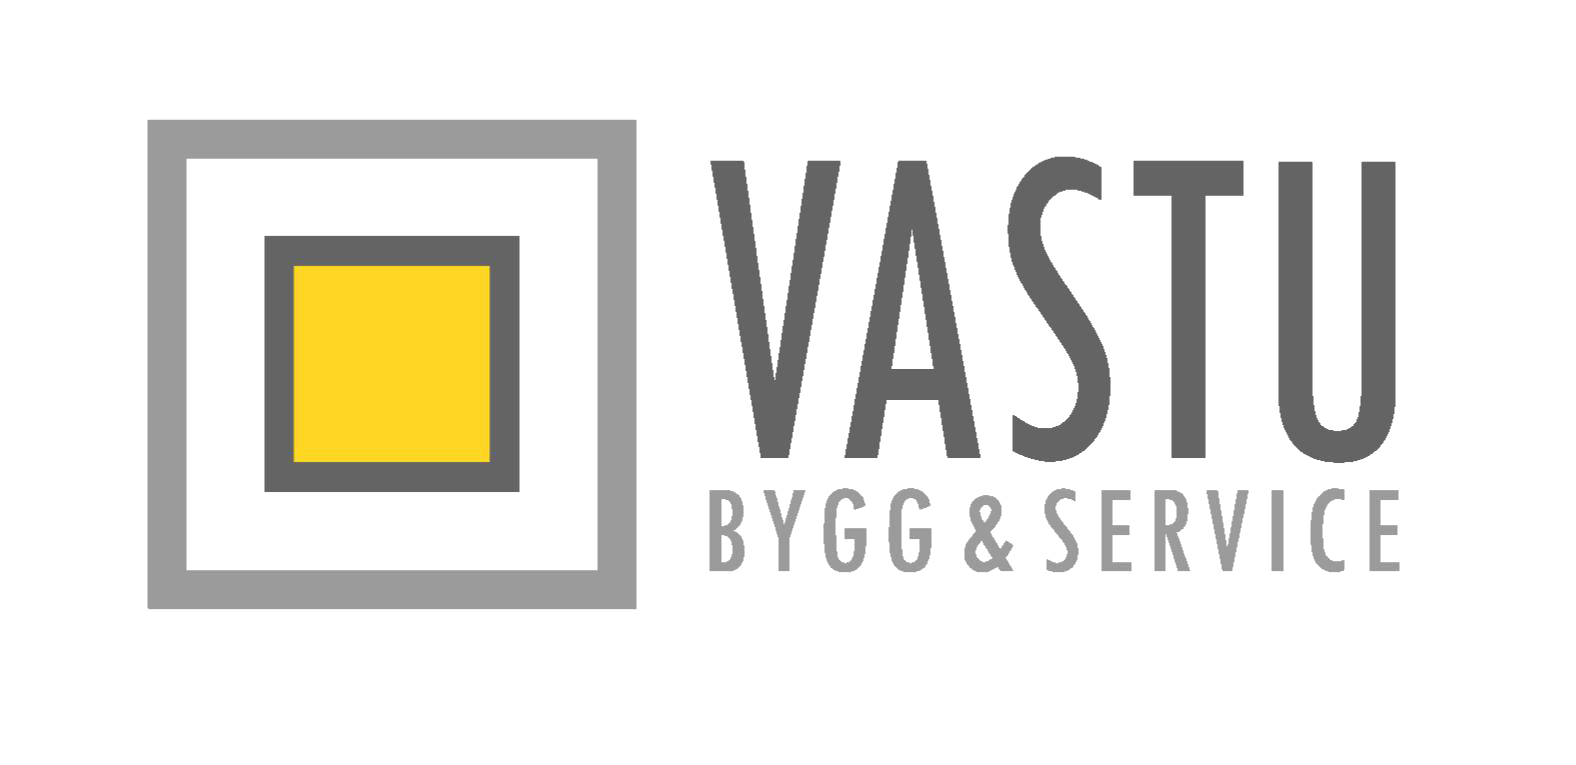 Vastus Bygg och Service AB